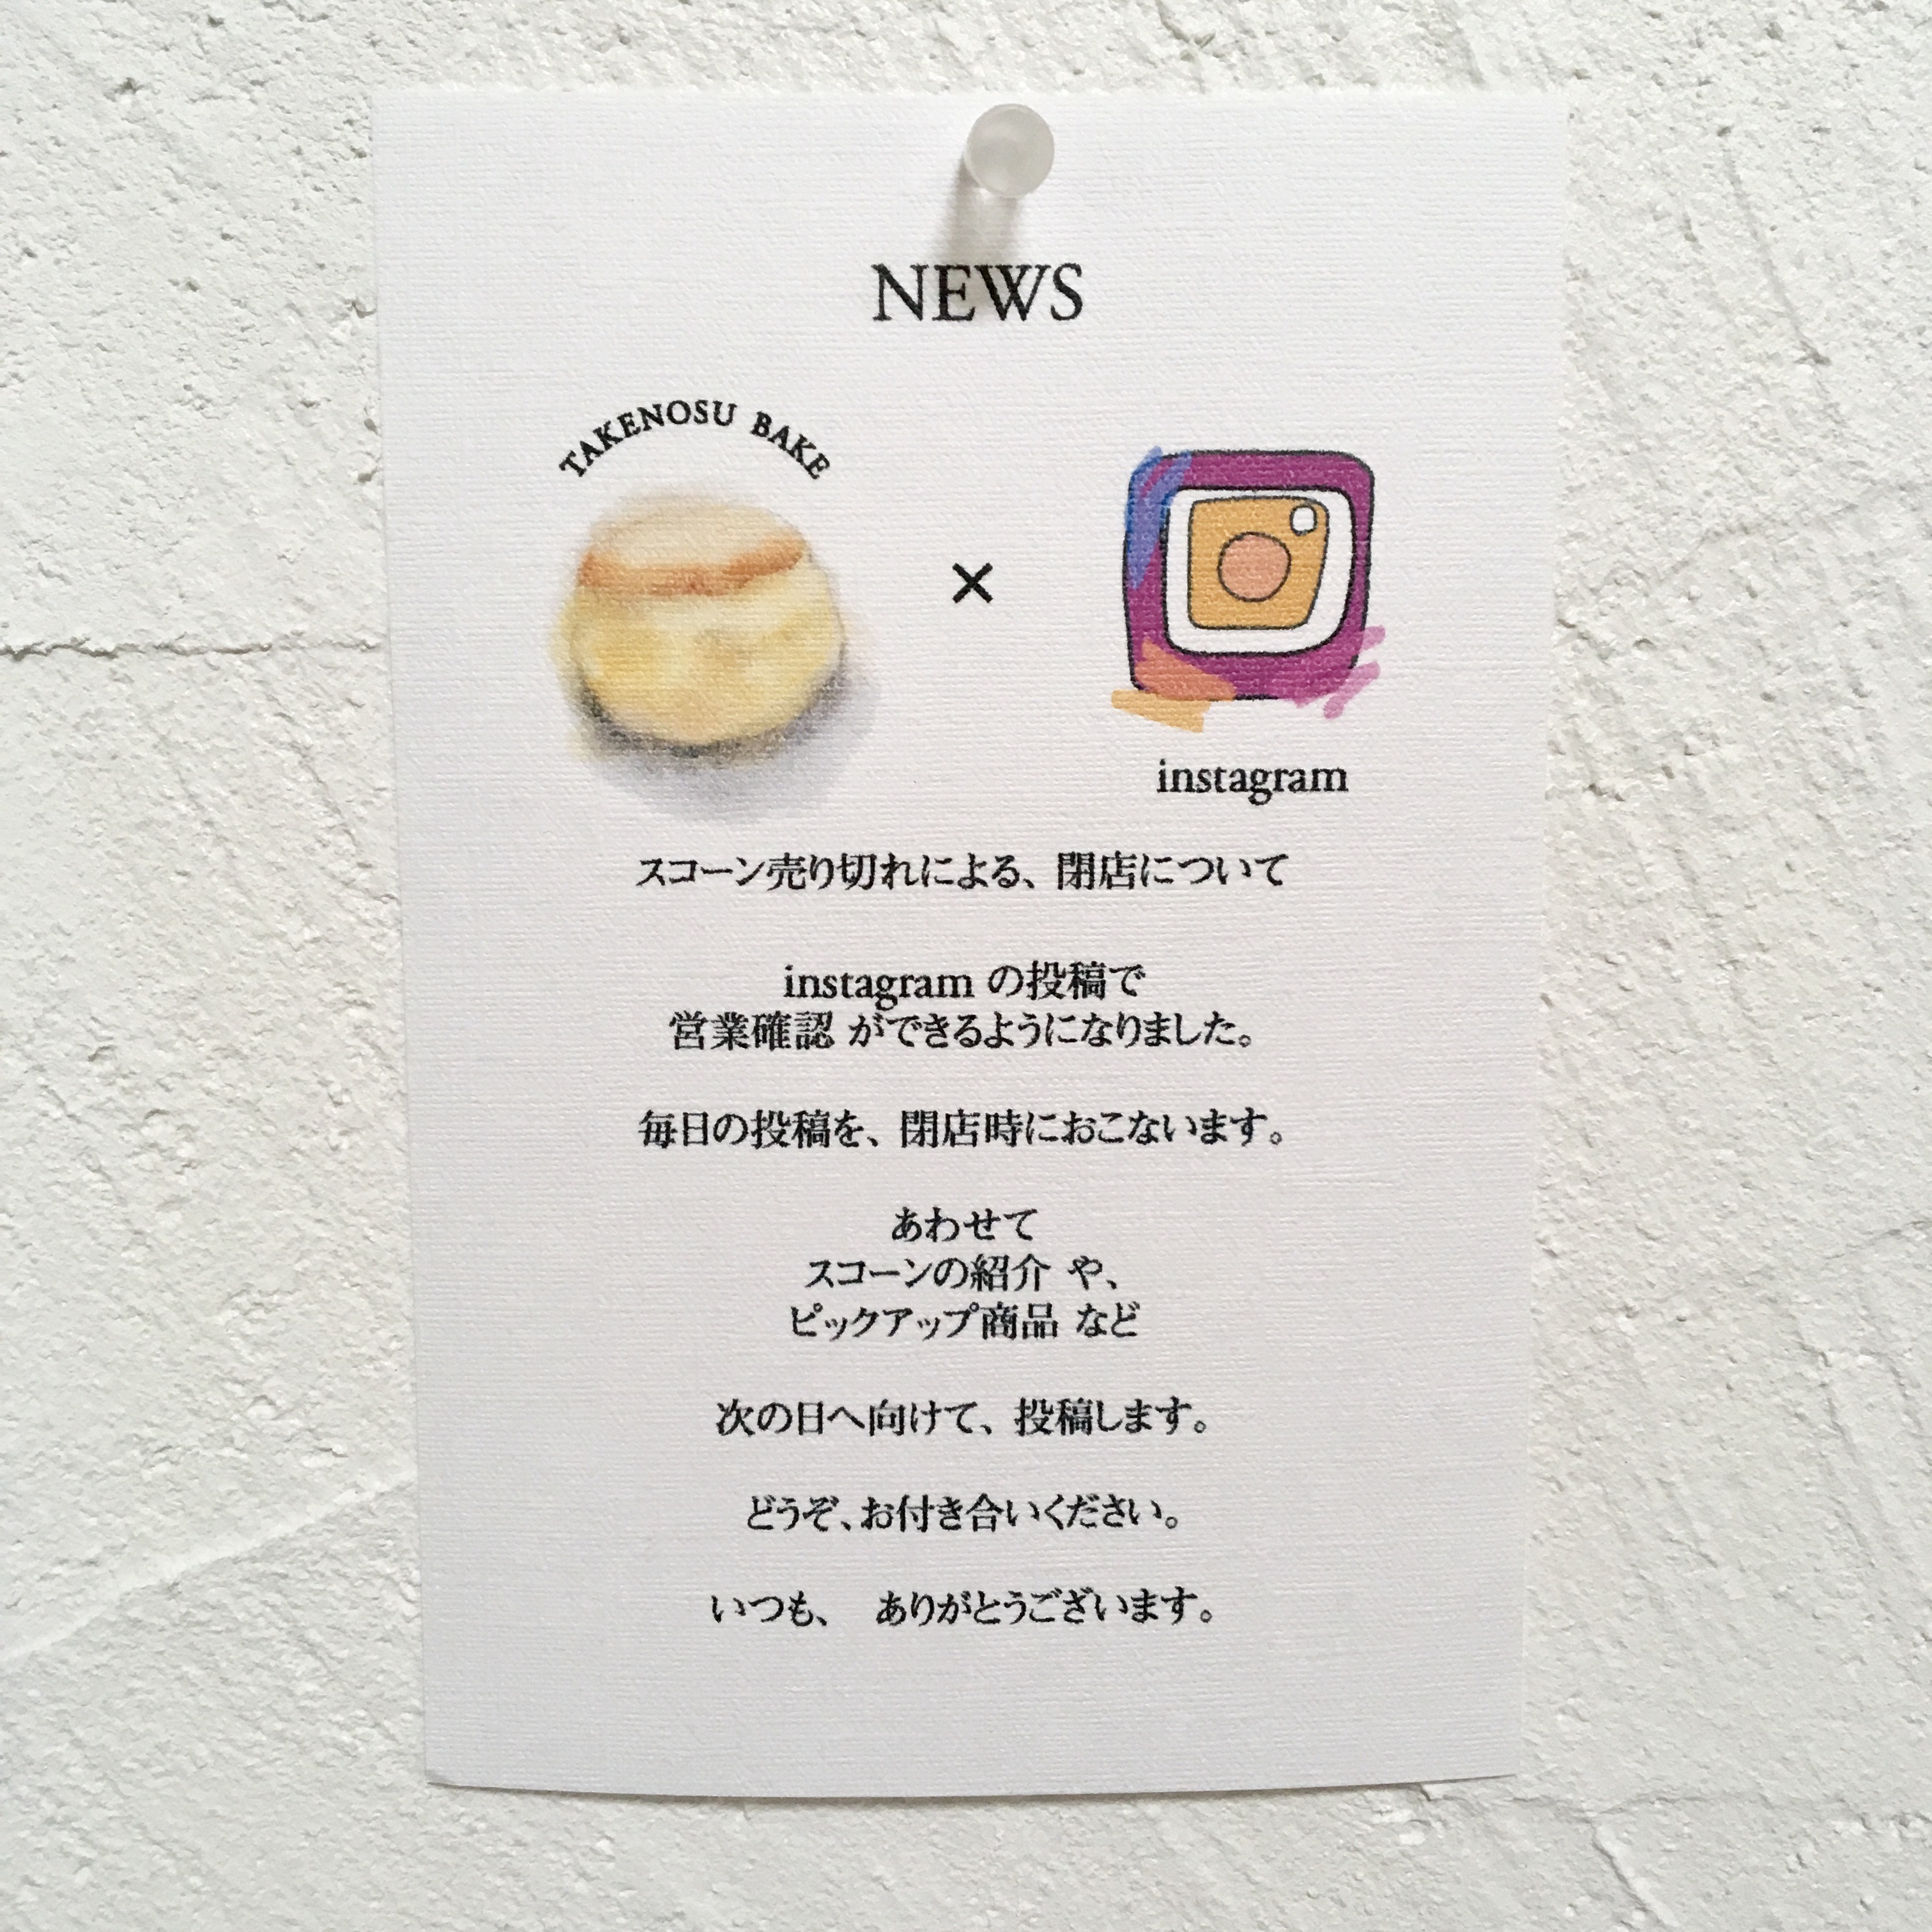 TAKENOSU BAKE × Instagram(インスタグラム)